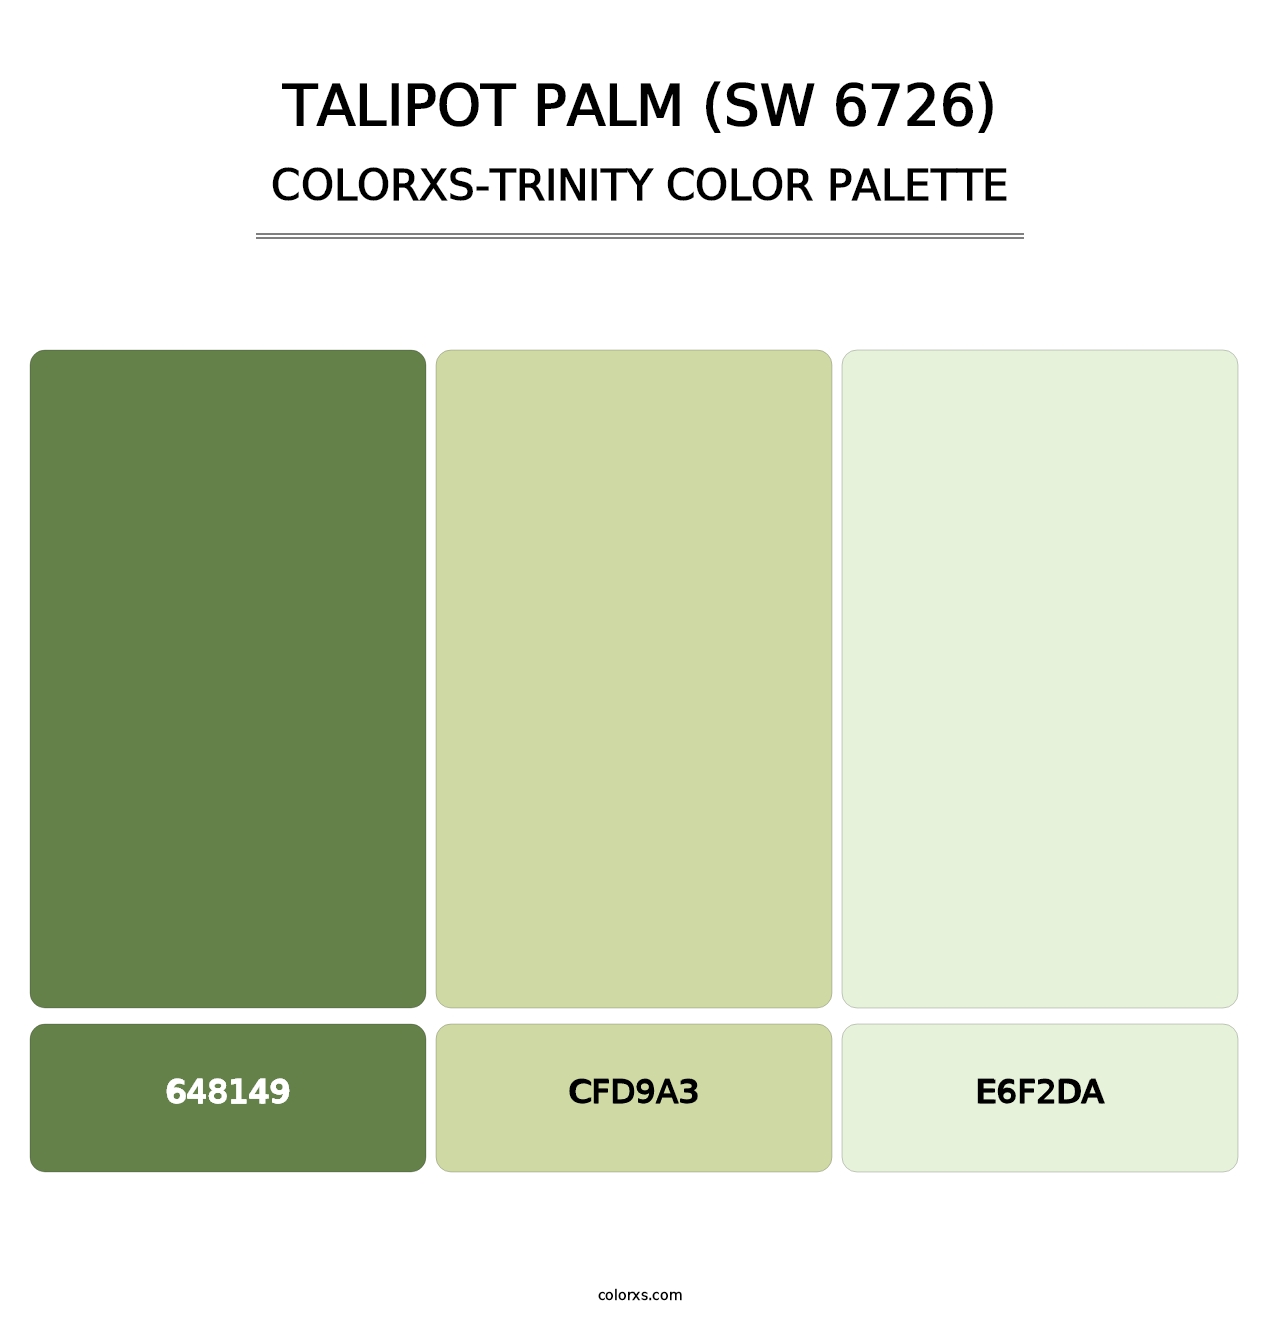 Talipot Palm (SW 6726) - Colorxs Trinity Palette